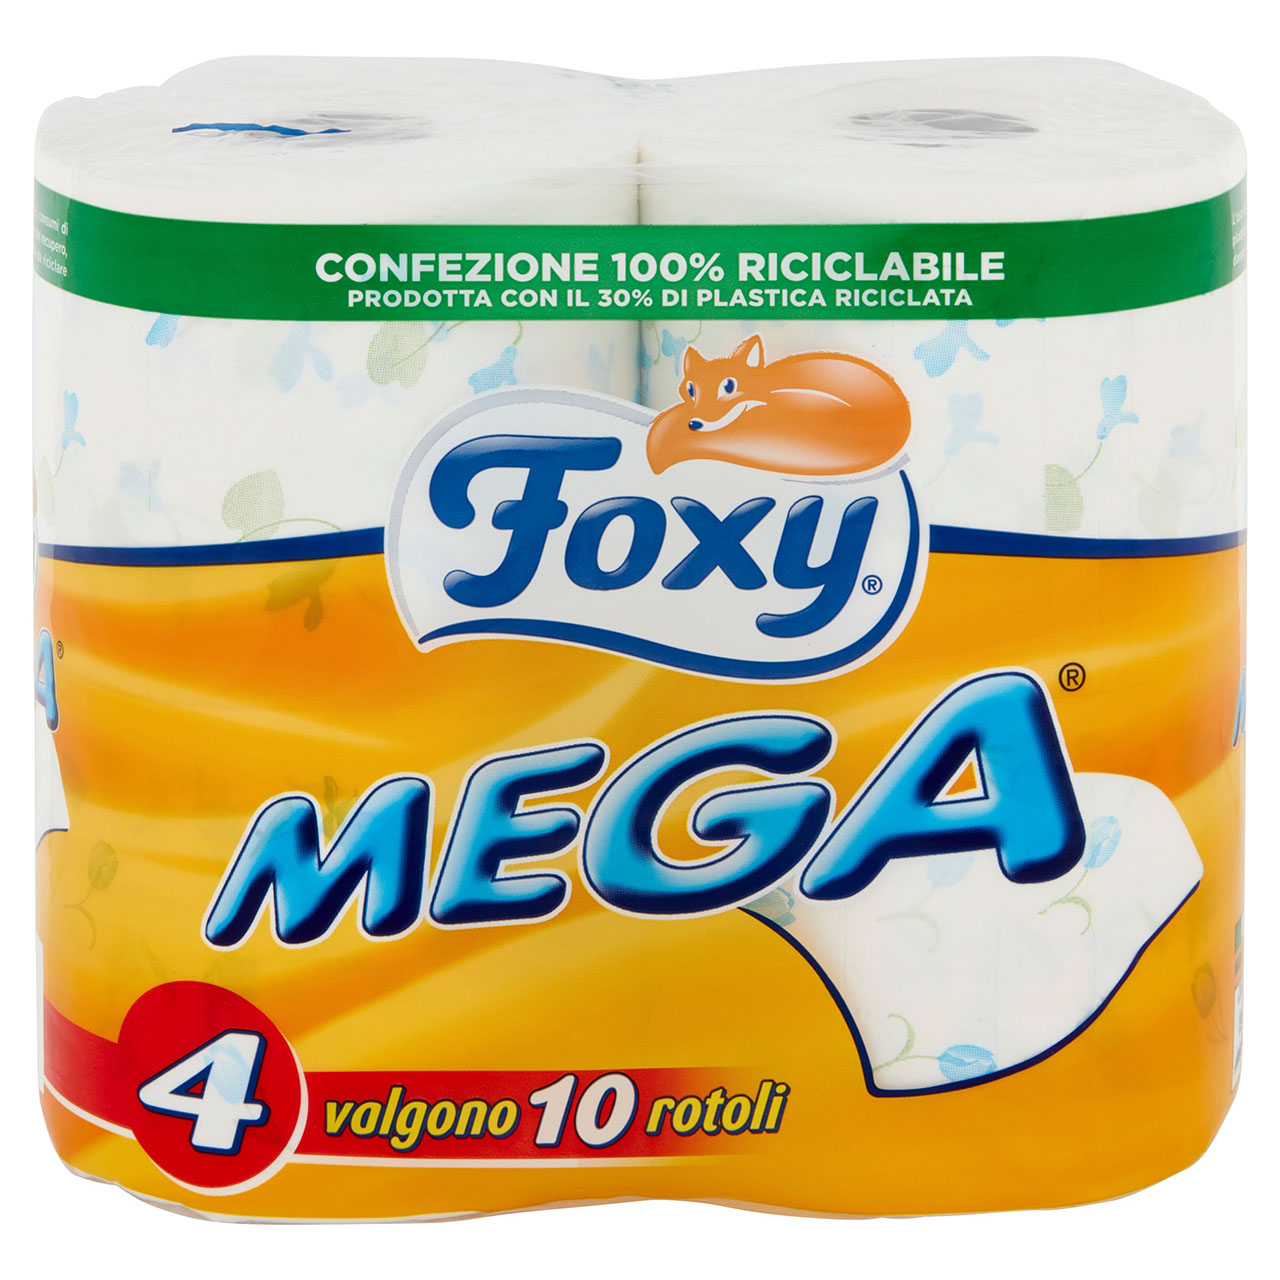 Foxy Mega 4 pz in vendita online